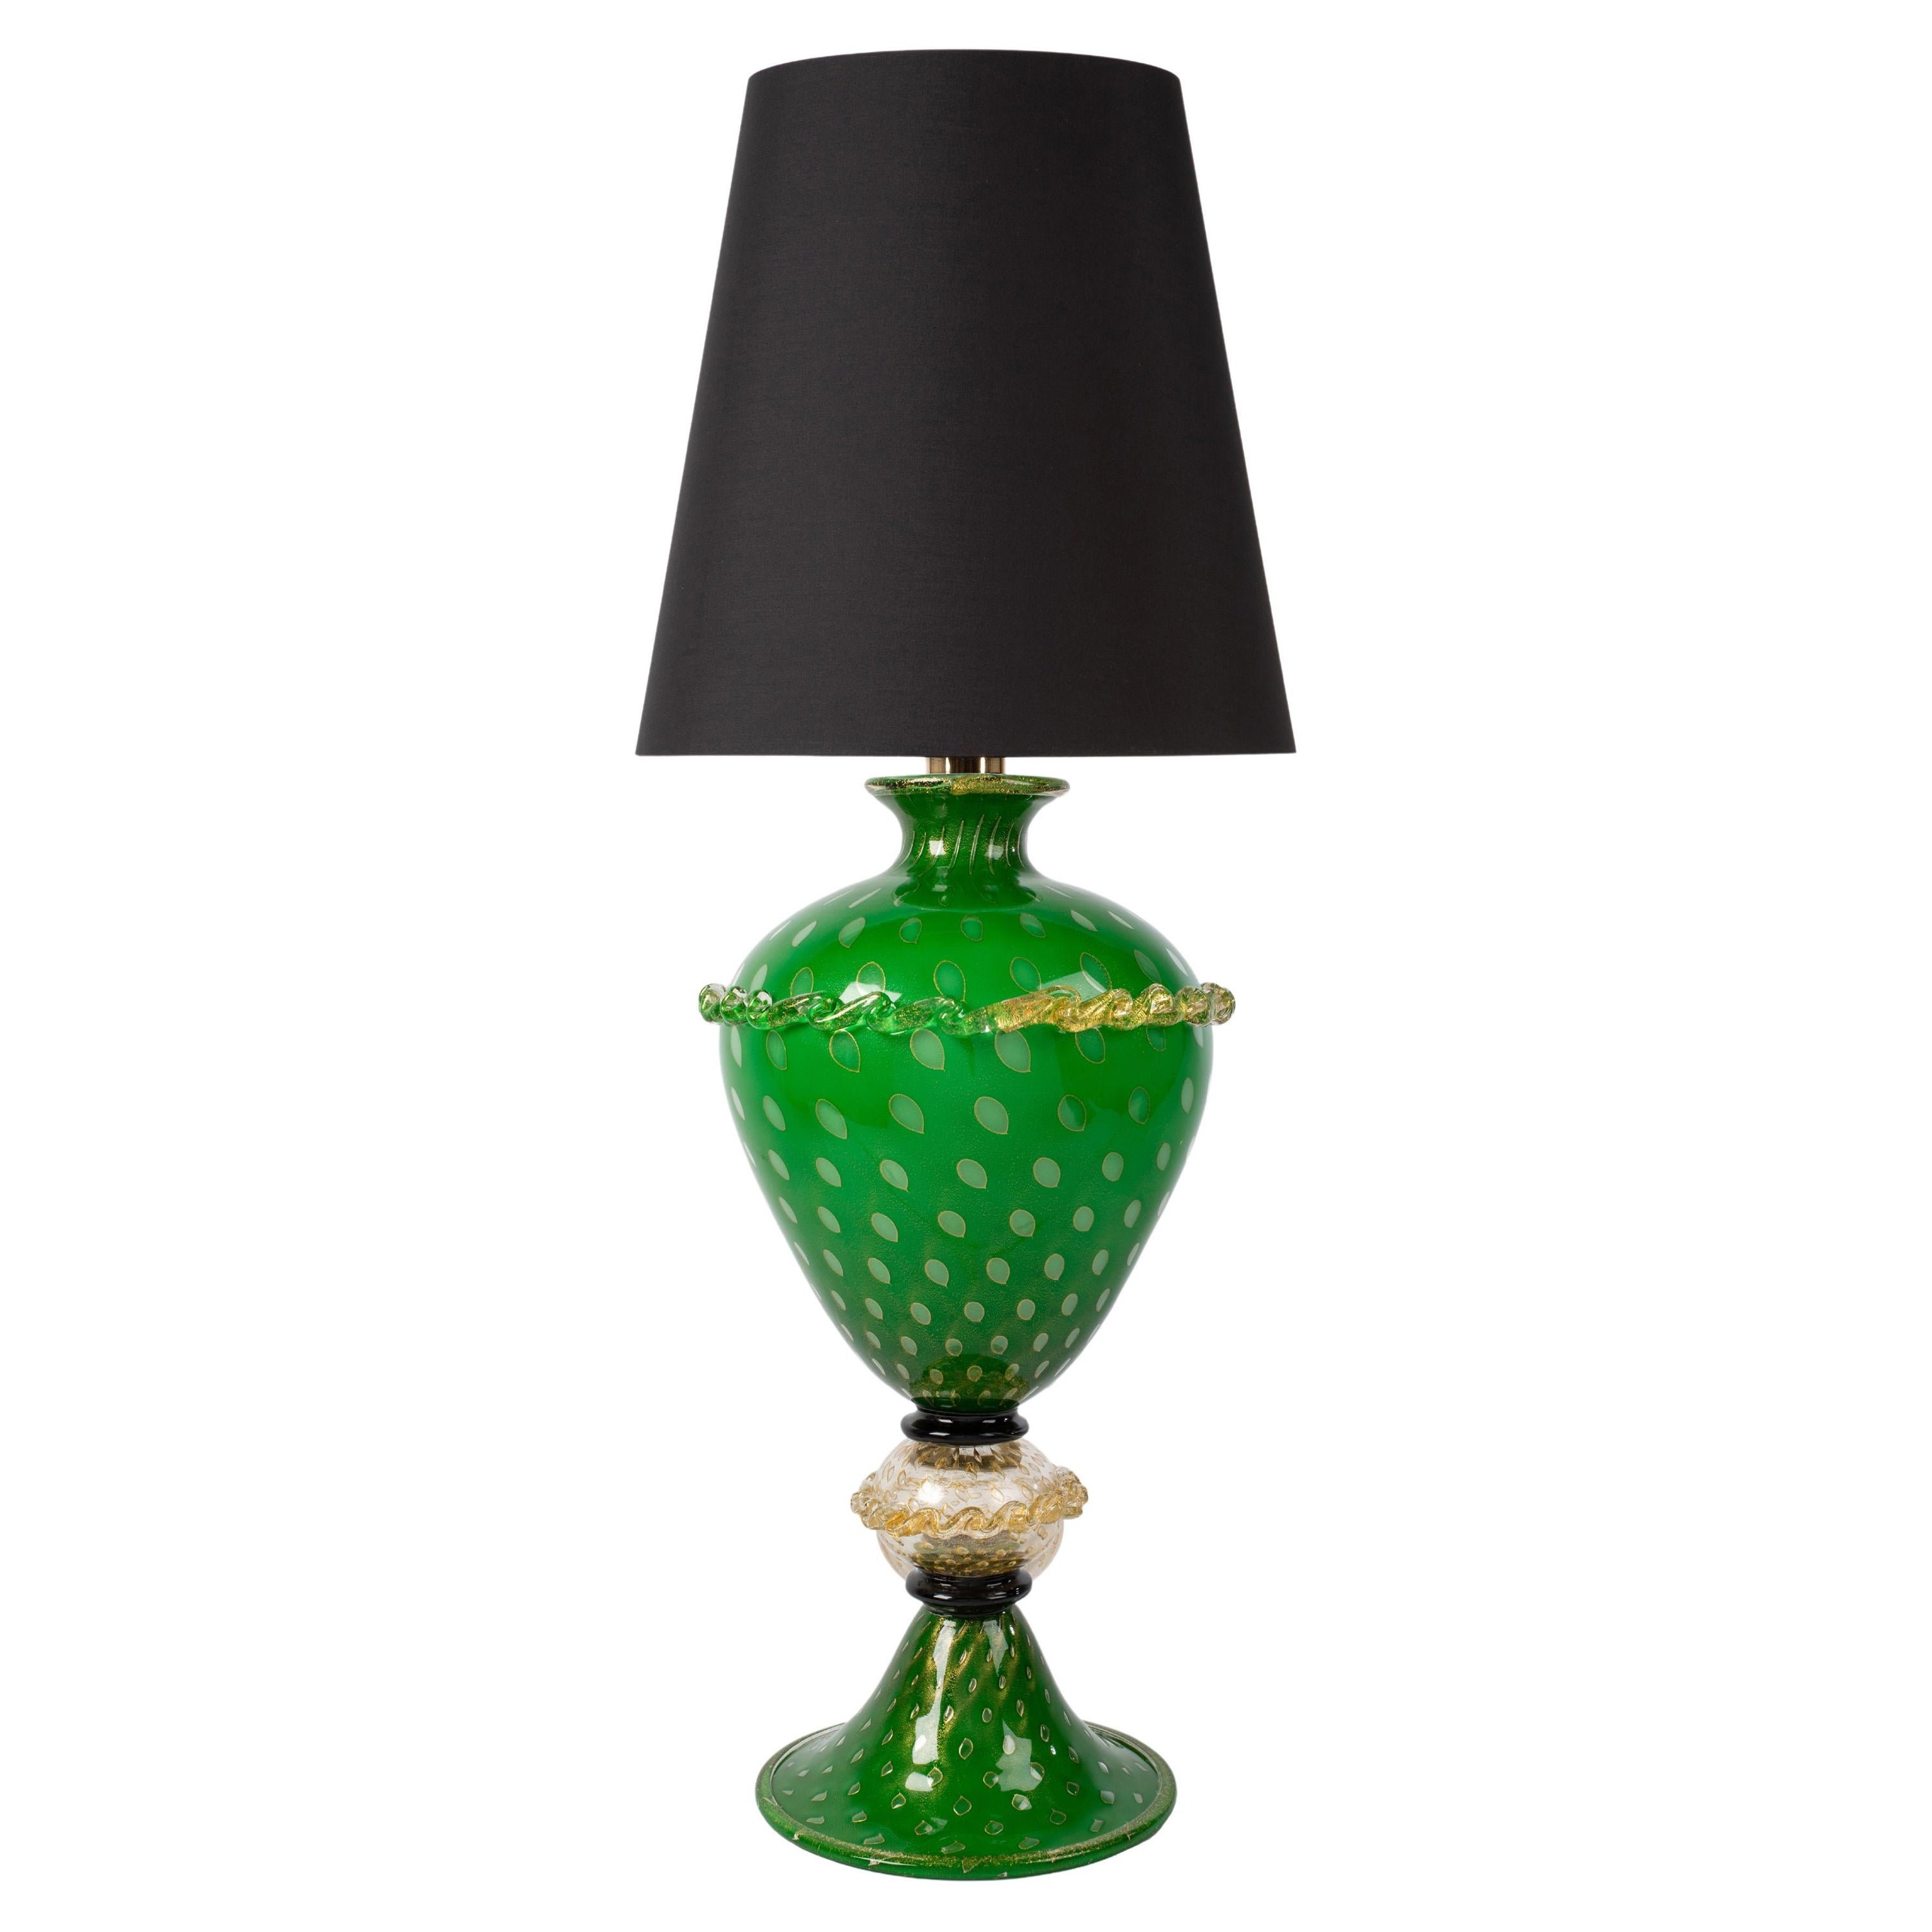 1295 Murano Hand Made Art Glass Table Lamp, Grande Mela, 24K Gold Leaf For Sale